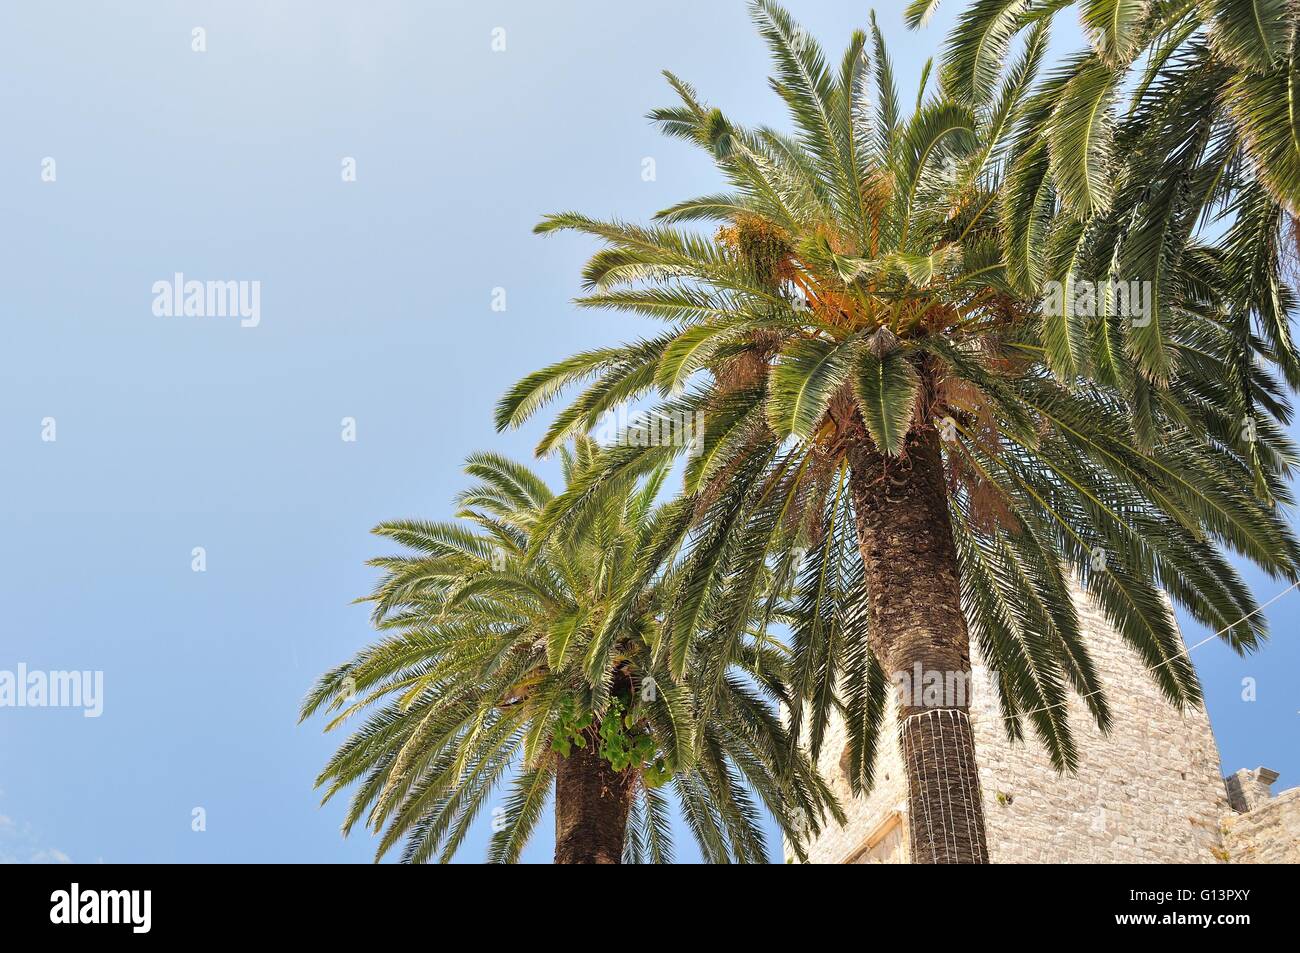 Tre Palm Tree sul lato destro del telaio con cielo blu su sfondo Foto Stock